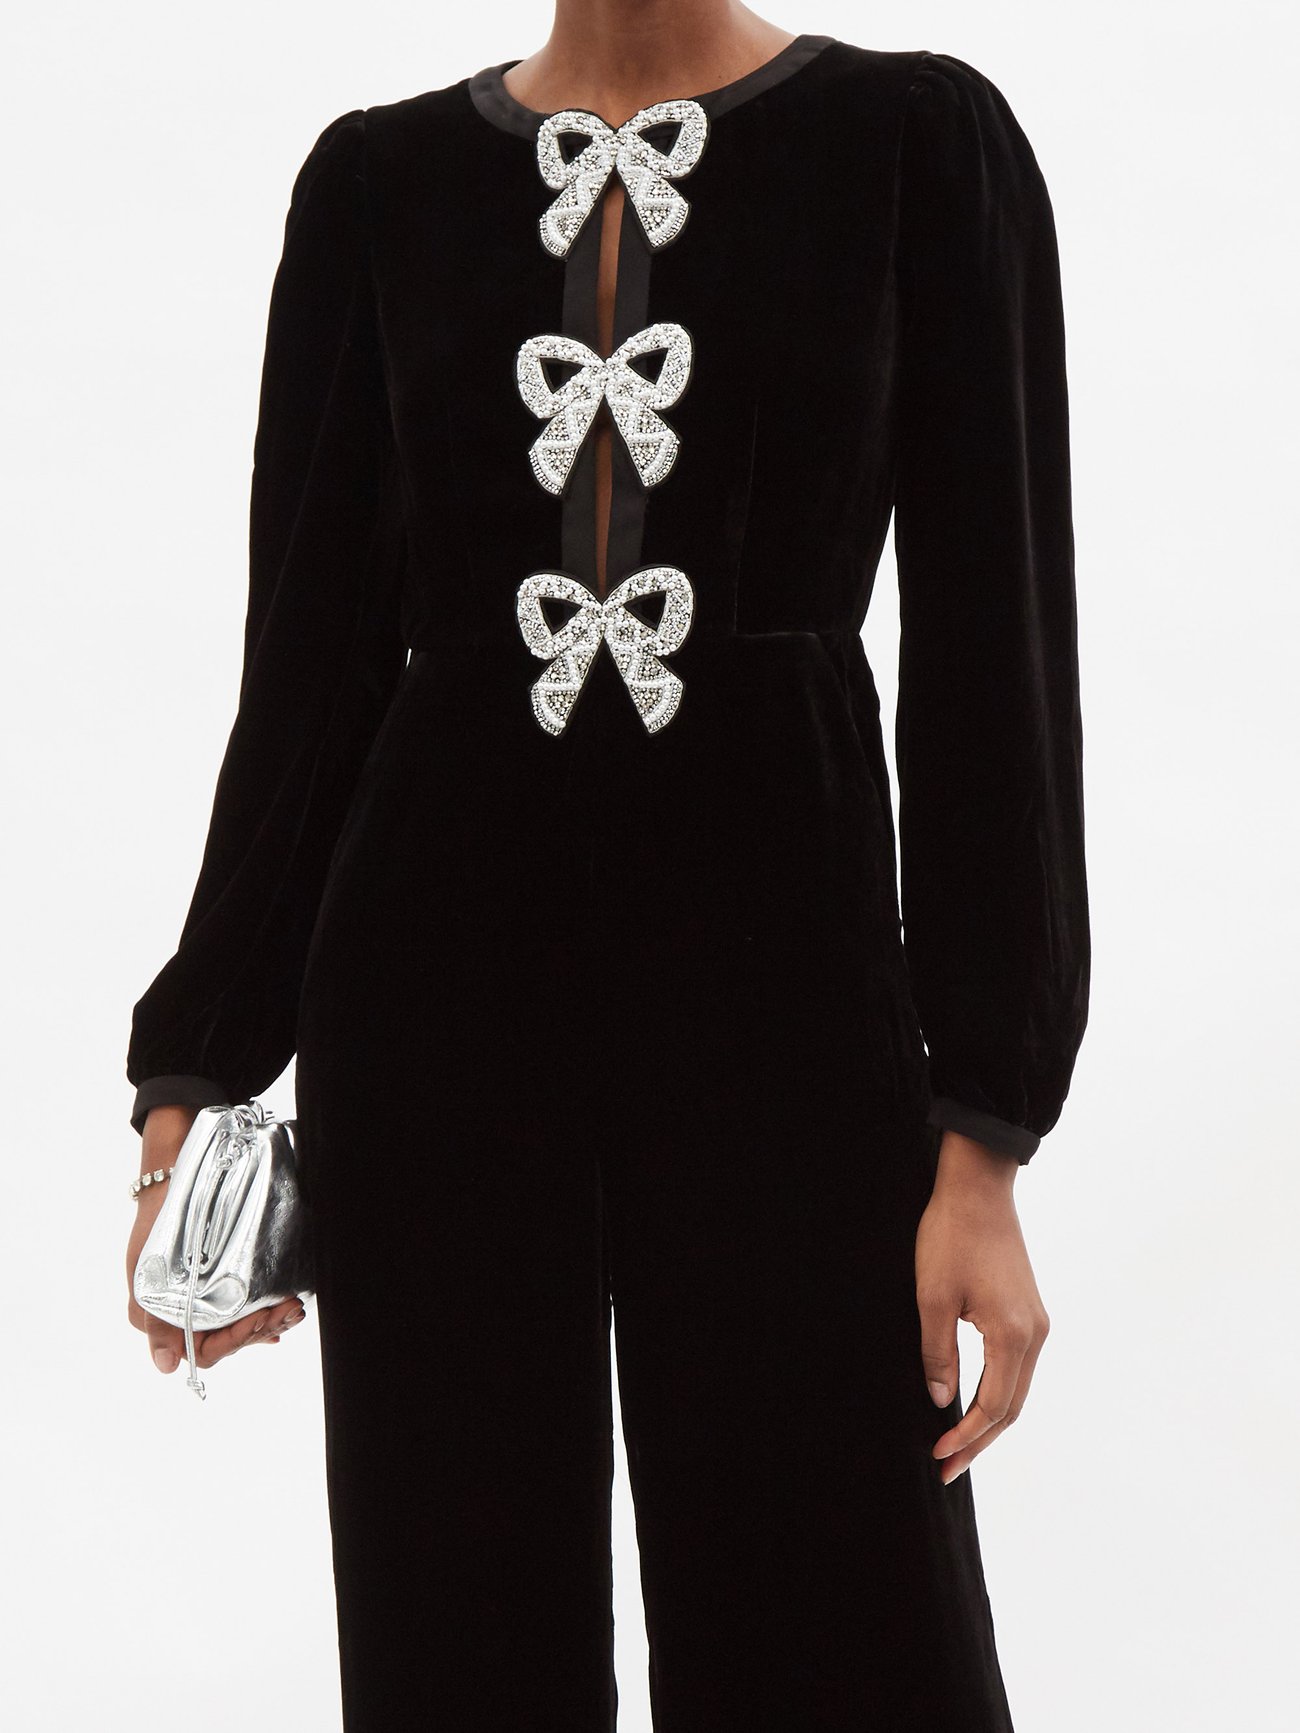 Nodress Original black velvet bow decorated lace jumpsuit camisole –  SoulWears